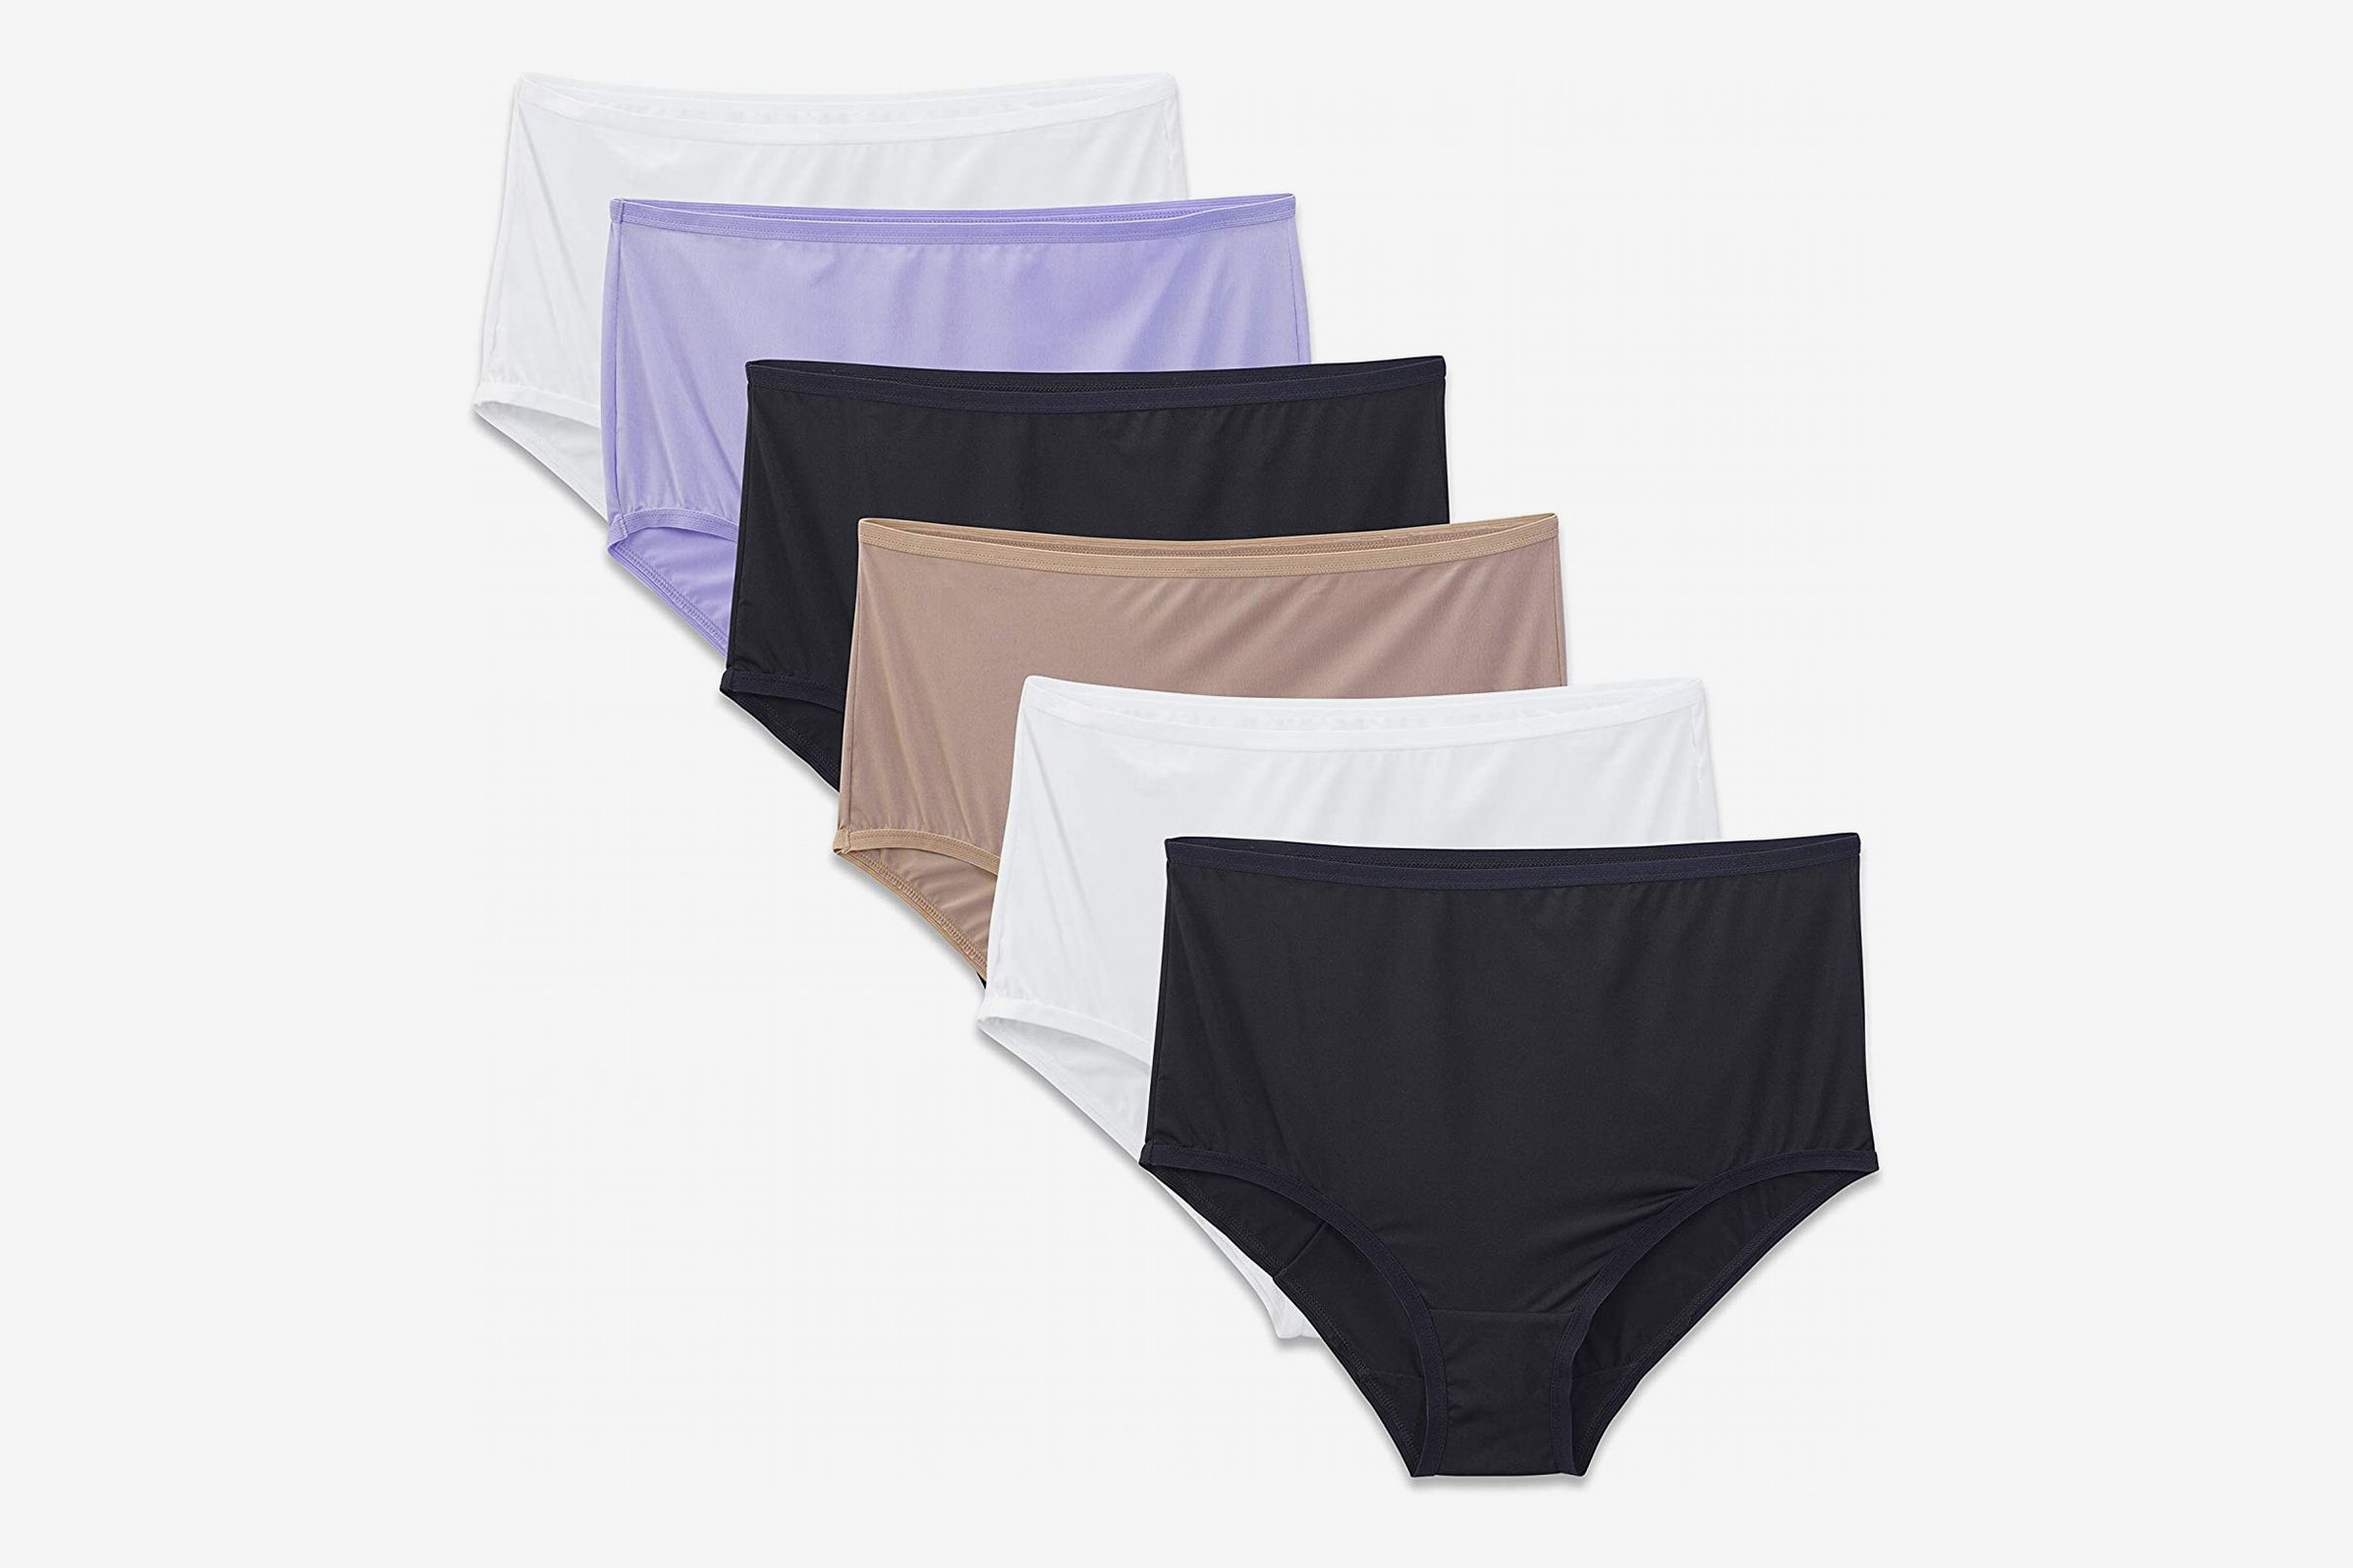 Women's Underwear Packs & Bundles - Comfortable Cotton Underwear